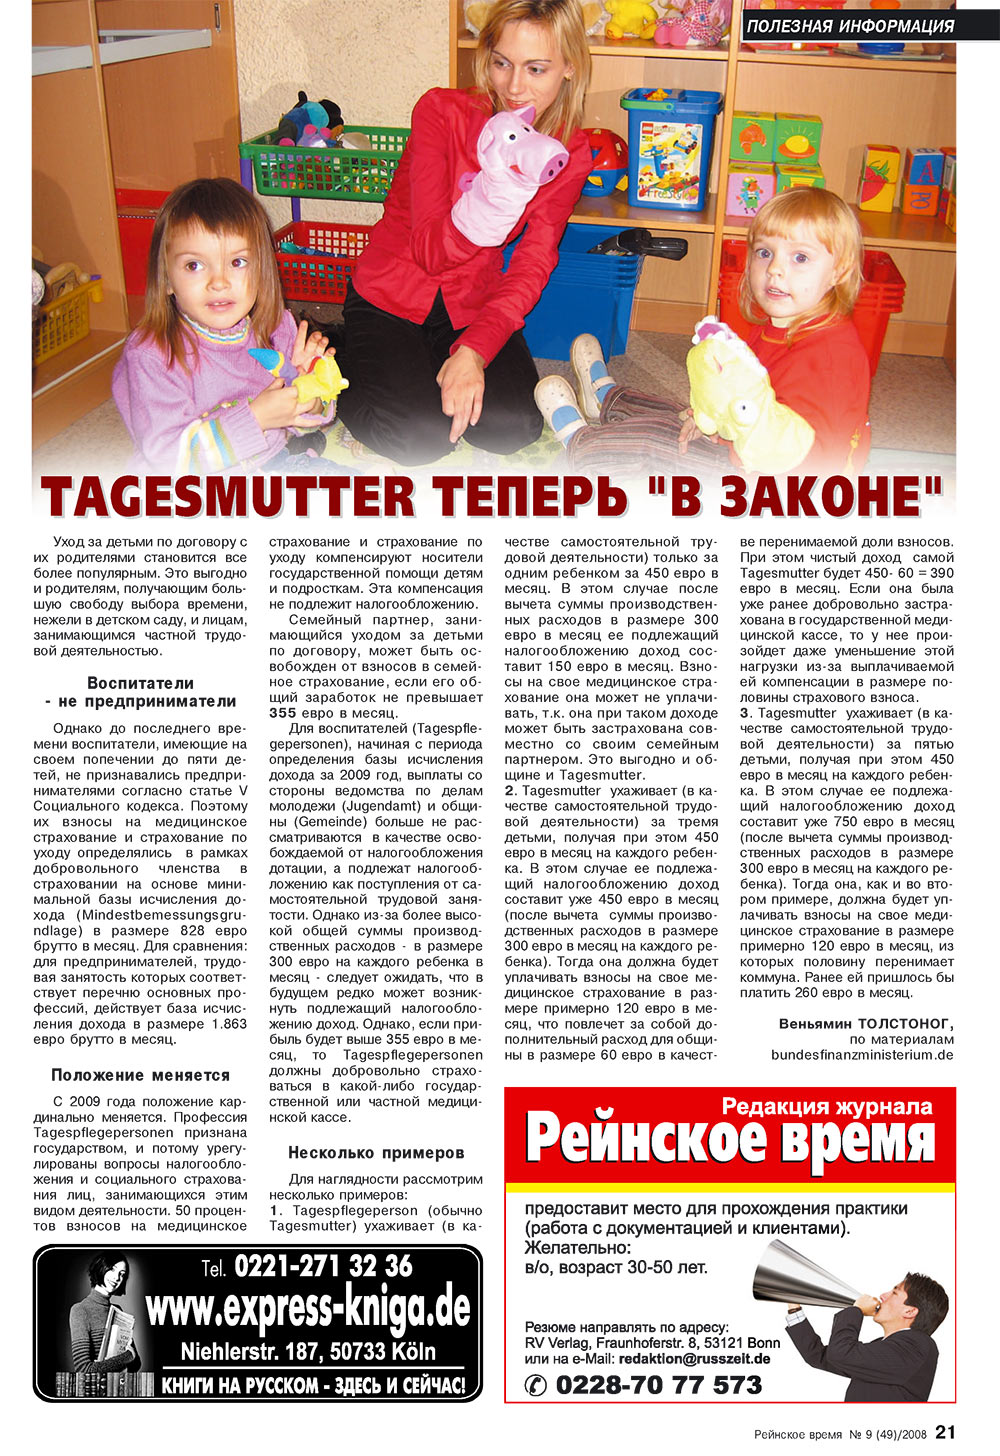 Rejnskoe vremja (Zeitschrift). 2008 Jahr, Ausgabe 9, Seite 21